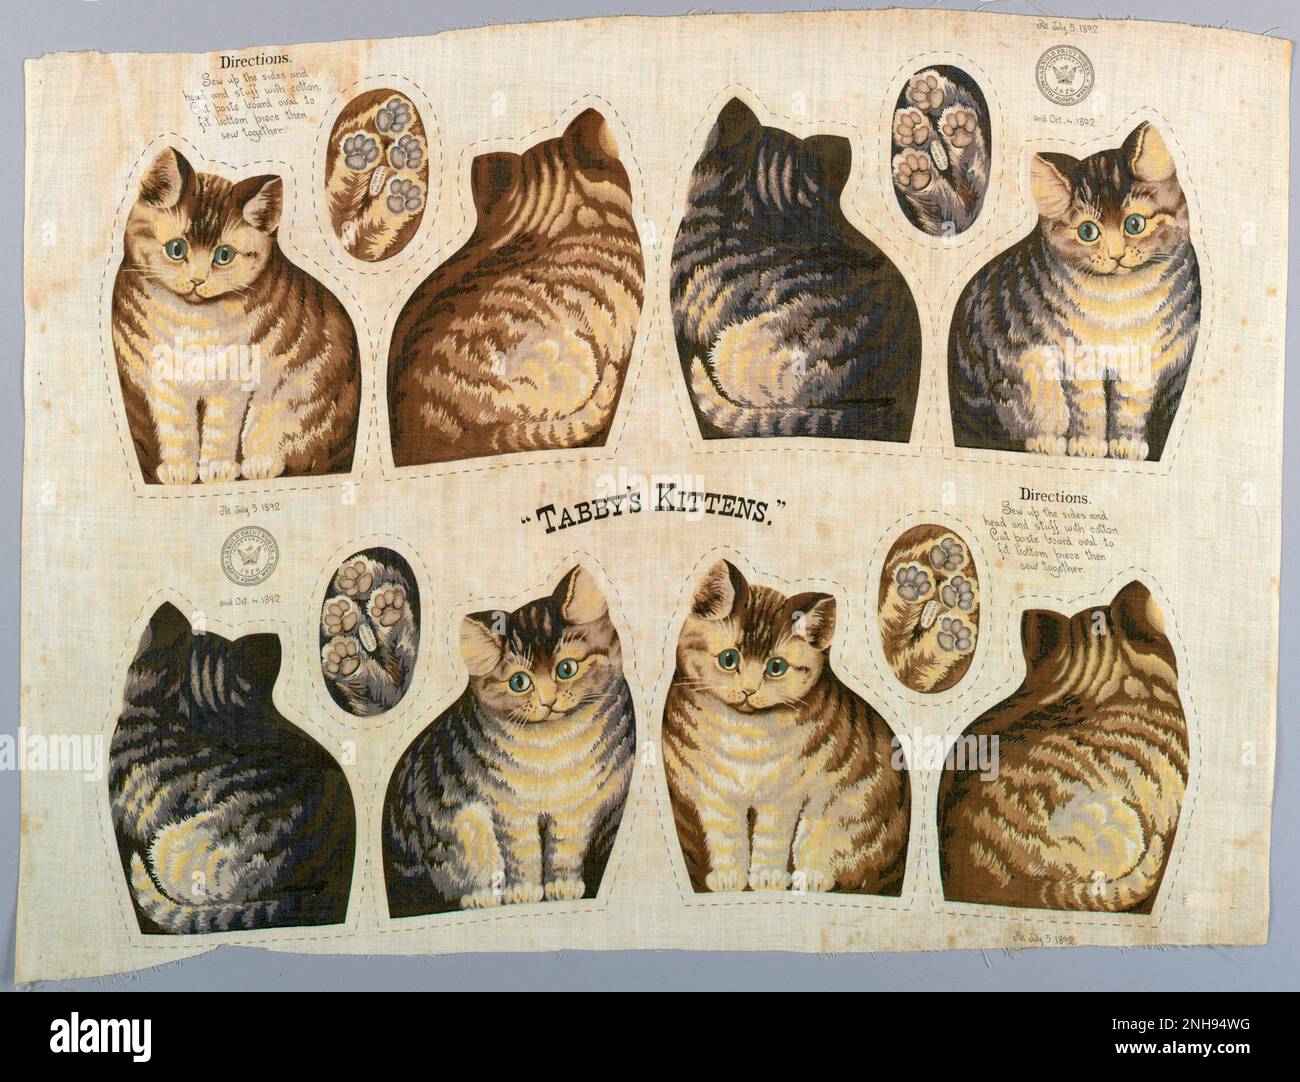 Baumwolltextilien von Tabby's Kittens, die in Plüschspielzeug geschnitten und genäht werden sollen. Die Nähanweisungen sind oben links und unten rechts aufgedruckt. Datum 1892. Das Ithaca Kitty, ursprünglich als Tabby Cat bekannt, war ein beliebtes Stoffspielzeug in den USA und begann eine Modeerscheinung für Plüschspielzeuge, die von seiner Einführung im Jahr 1892 bis nach dem Ersten Weltkrieg dauerte Inspiriert von einer Katze aus Ithaca, New York, wurde ein patentiertes Tabby Cat-Design auf einem halben Meter Musselin für jeweils zehn Cent verkauft. Fast 200.000 wurden in der ersten Weihnachtssaison verkauft. Stockfoto